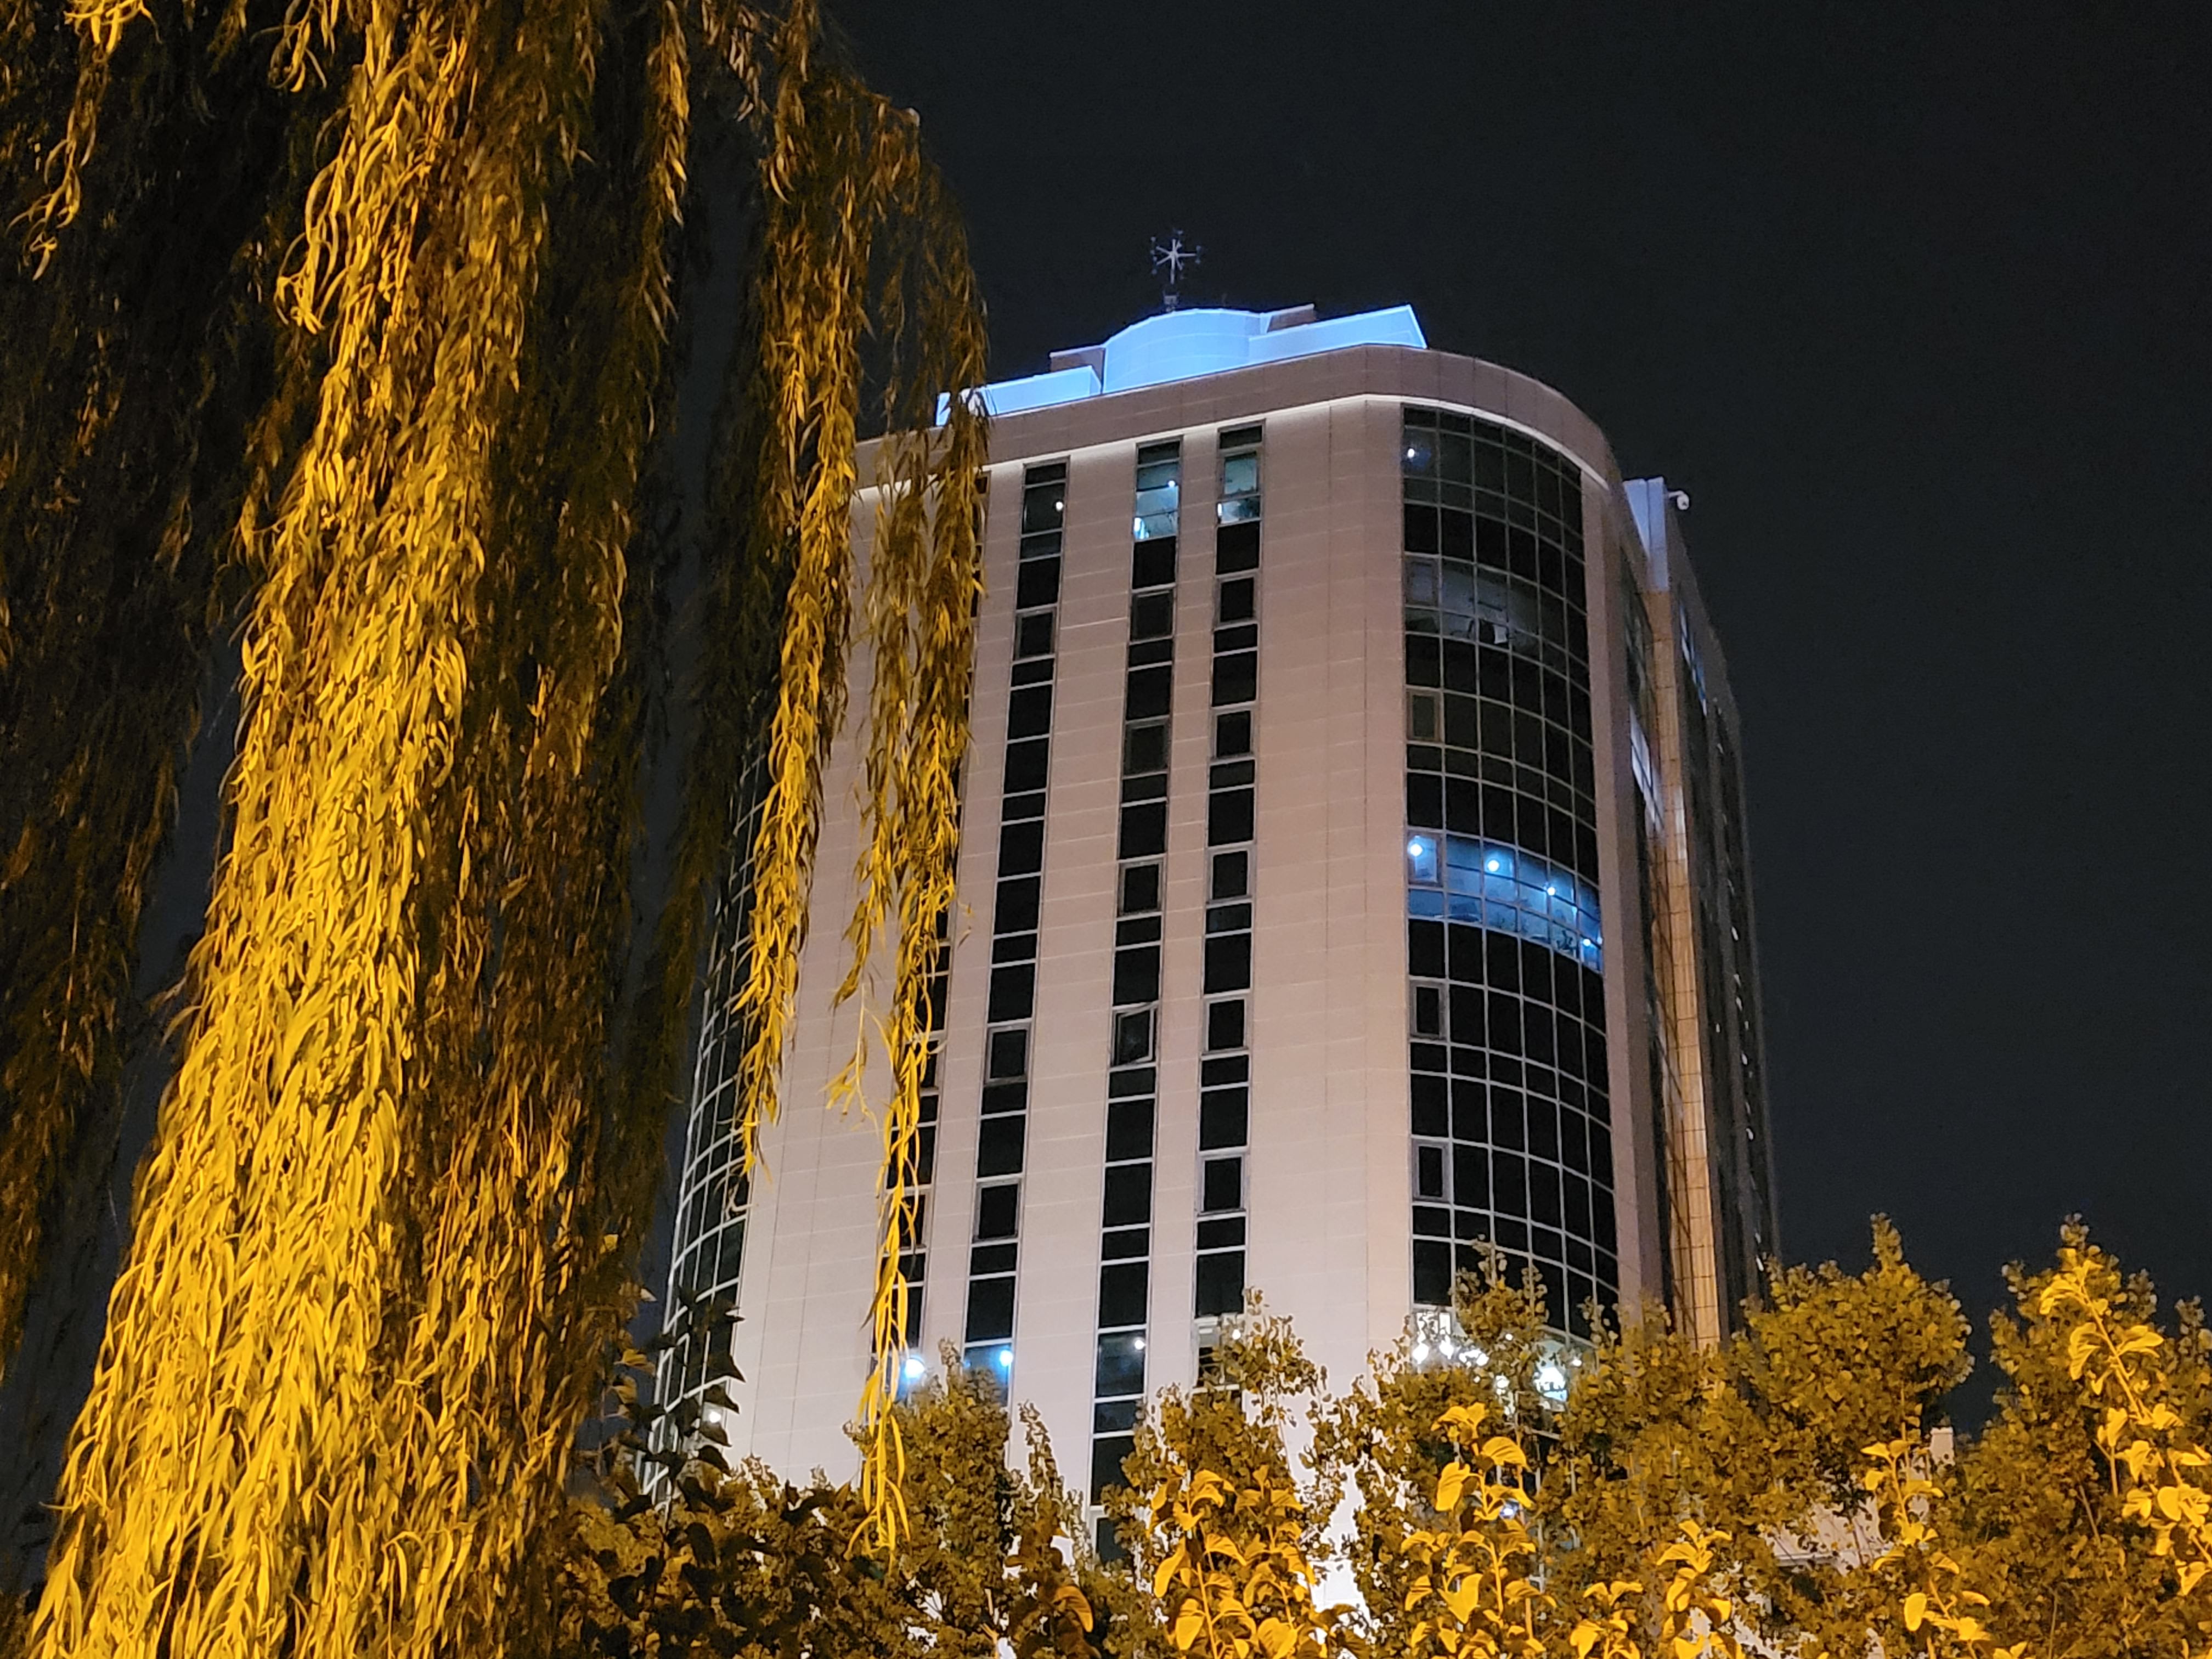 نمونه عکس 2x دوربین واید گلکسی زد فولد ۲ در تاریکی - ساختمانی در میان درختان پارک آب و آتش تهران